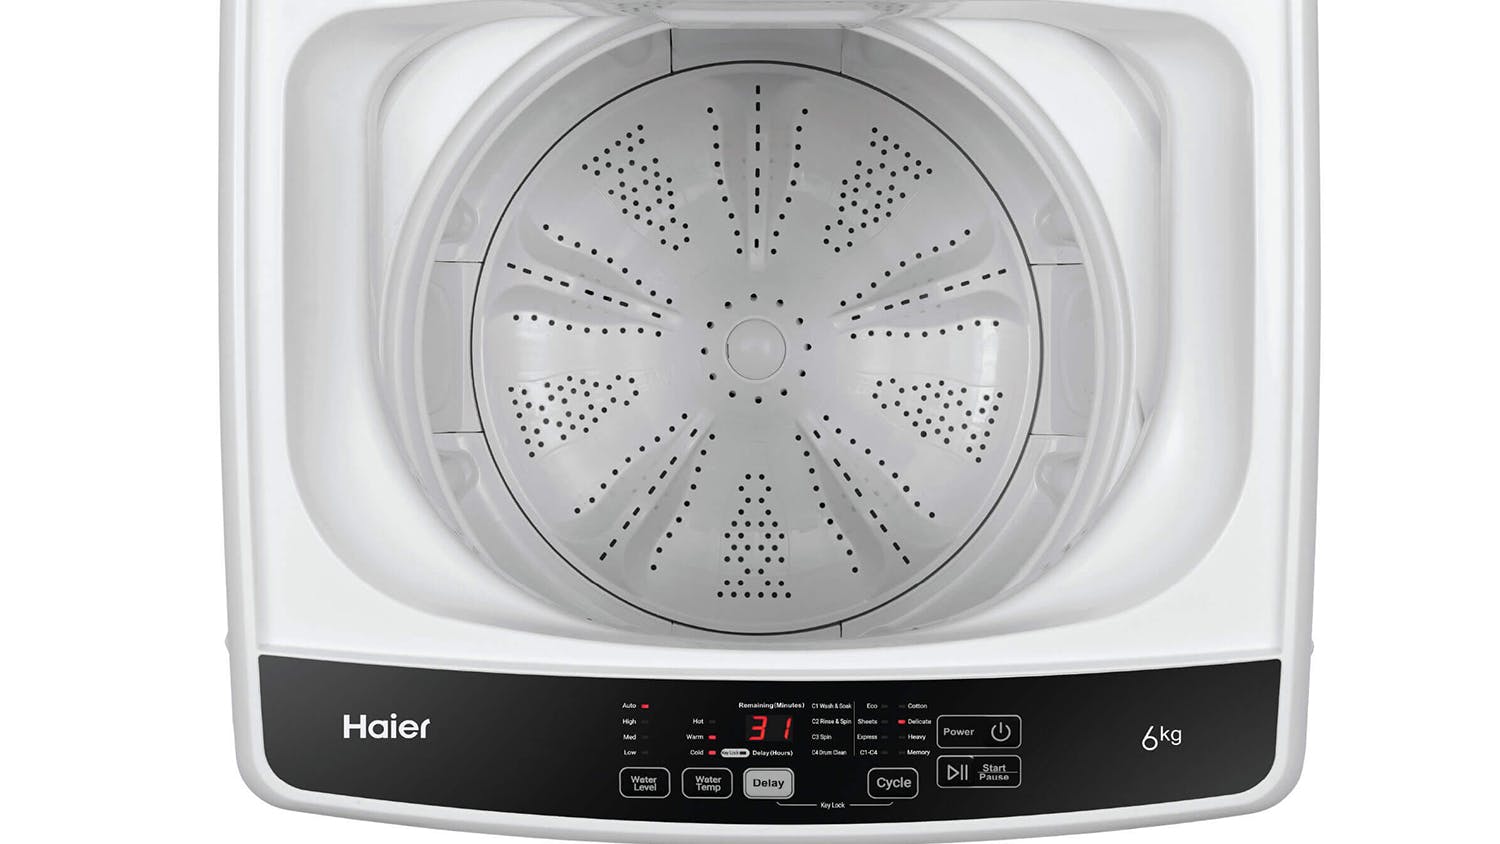 Haier 6kg 8 Program Top Loading Washing Machine - White (HWT60AA1)